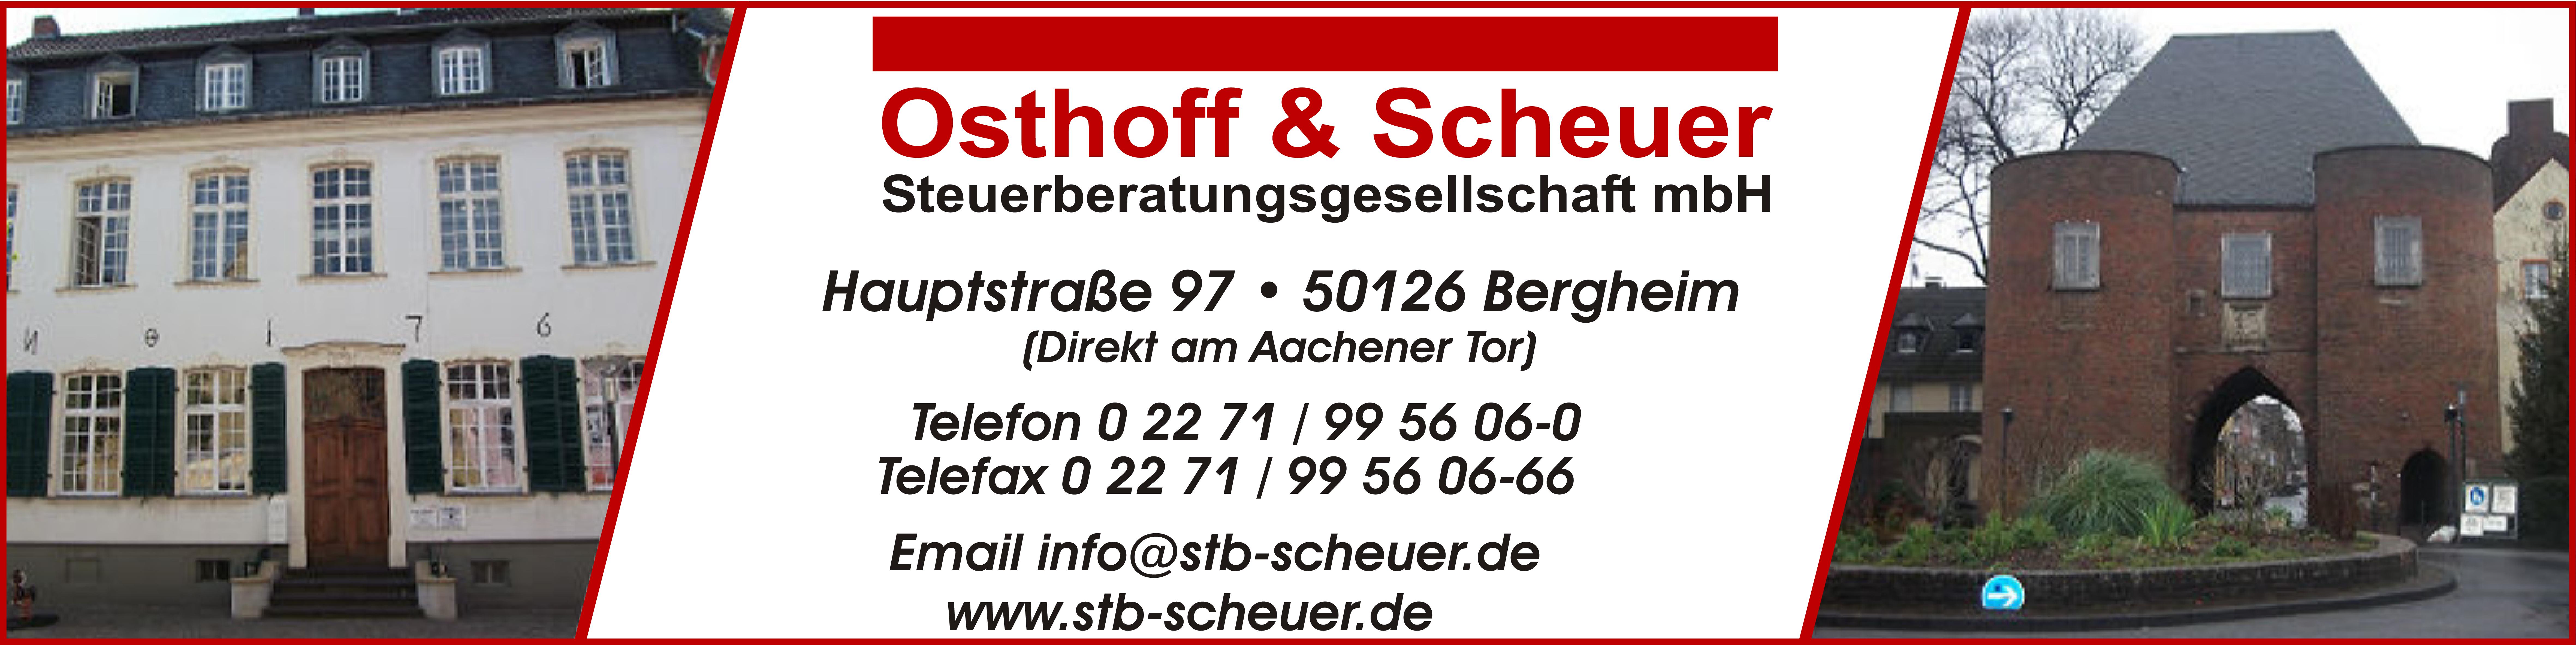 Osthoff & Scheuer